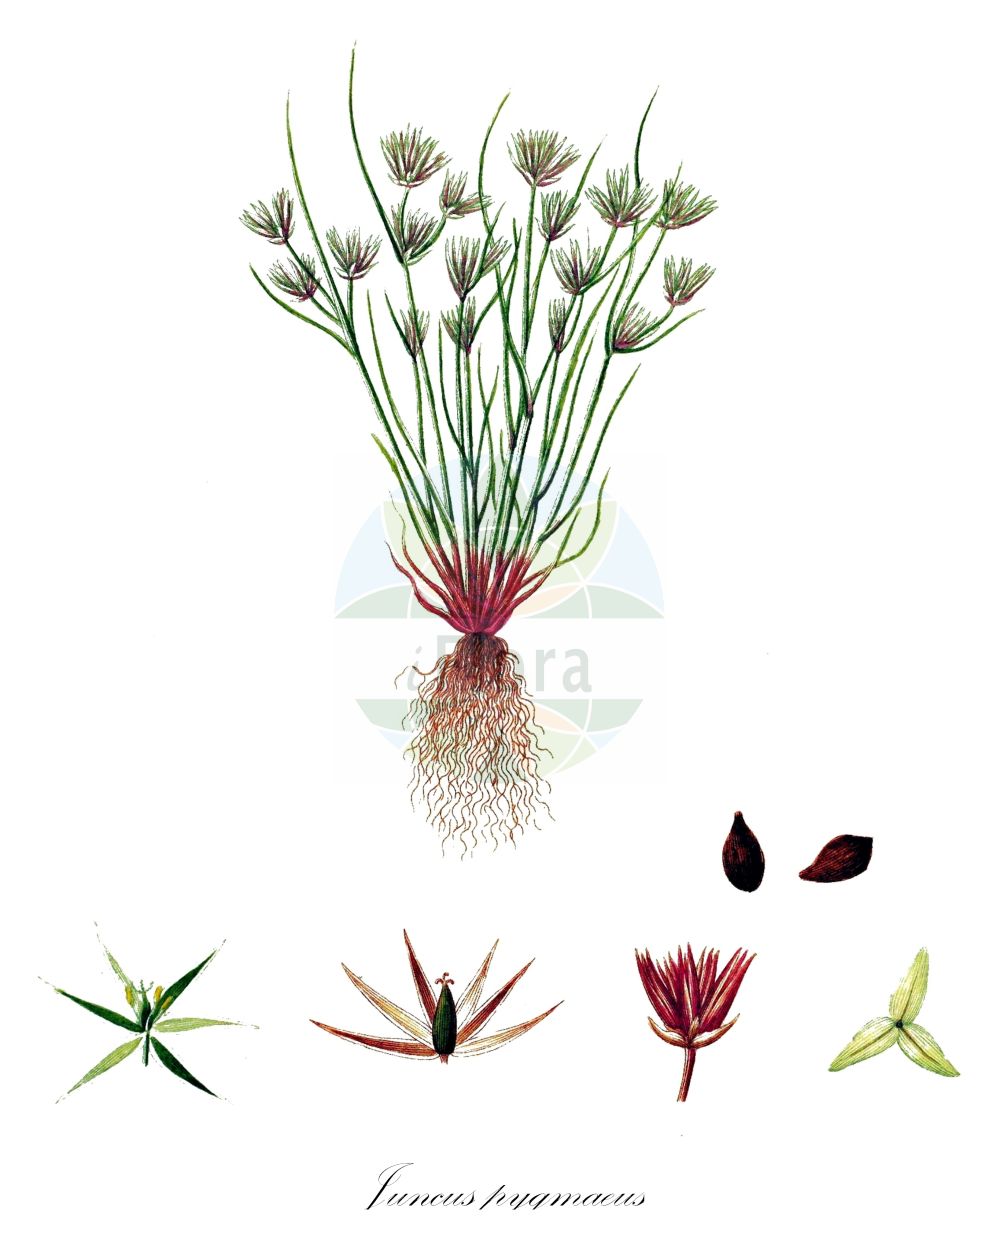 Historische Abbildung von Juncus pygmaeus (Zwerg-Binse - Pigmy Rush). Das Bild zeigt Blatt, Bluete, Frucht und Same. ---- Historical Drawing of Juncus pygmaeus (Zwerg-Binse - Pigmy Rush). The image is showing leaf, flower, fruit and seed.(Juncus pygmaeus,Zwerg-Binse,Pigmy Rush,Juncinella pygmaea,Juncus bicephalus,Juncus nanus,Juncus pygmaeus,Juncus pygmaeus var. umbelloides,Zwerg-Binse,Pigmy Rush,Pygmy Rush,Juncus,Binse,Rush,Juncaceae,Binsengewächse,Rush family,Blatt,Bluete,Frucht,Same,leaf,flower,fruit,seed,Oeder (1761-1883))